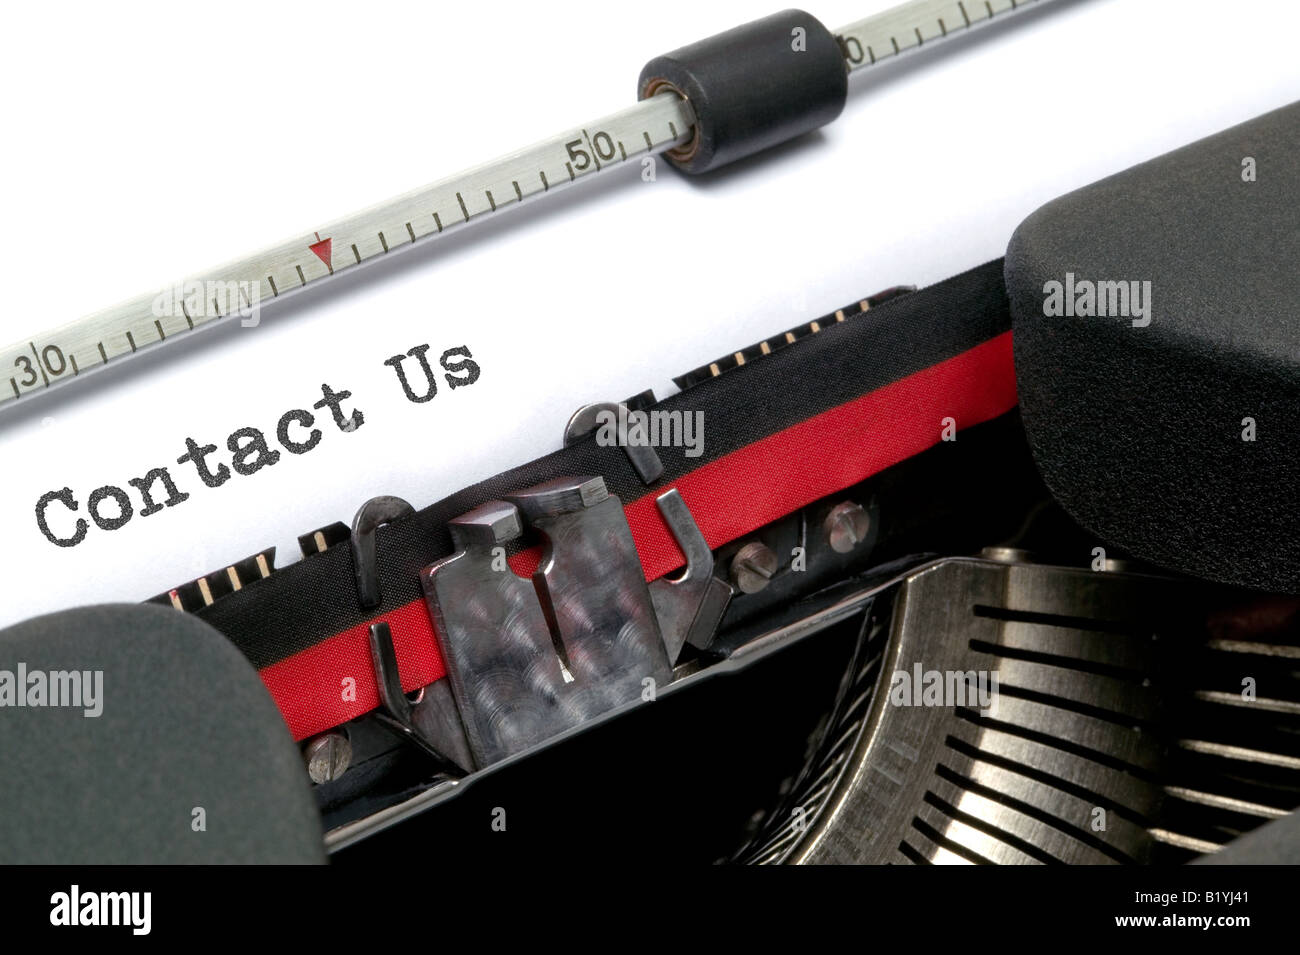 Contactez-nous tapé sur une vieille machine à écrire, tourné à un angle Banque D'Images